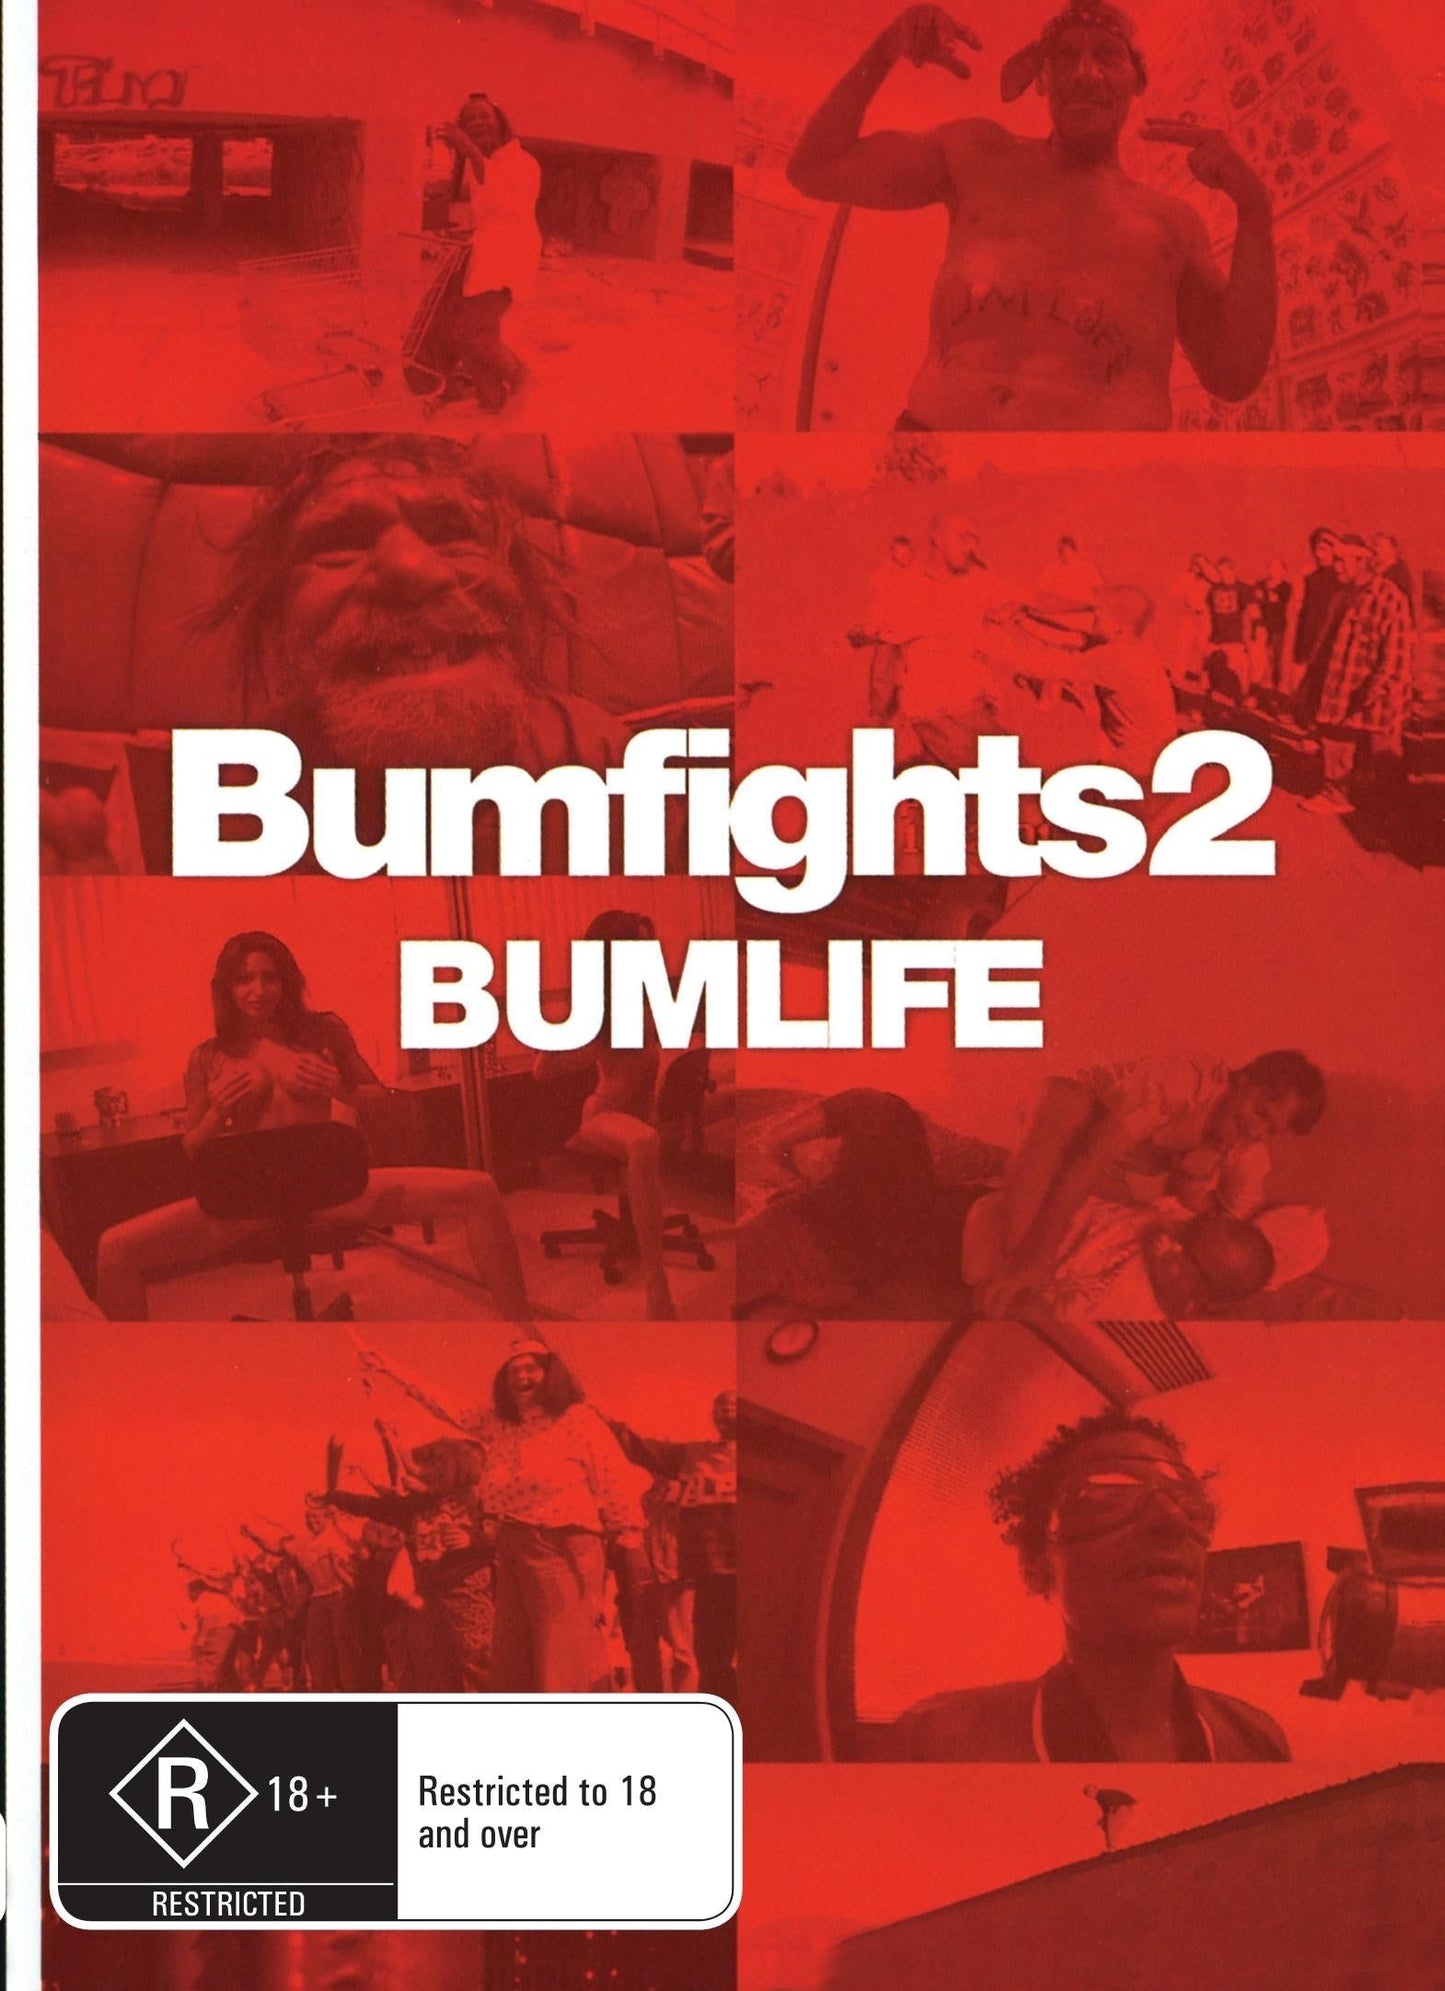 Bumfights Vol 2 : Bumlife rareandcollectibledvds